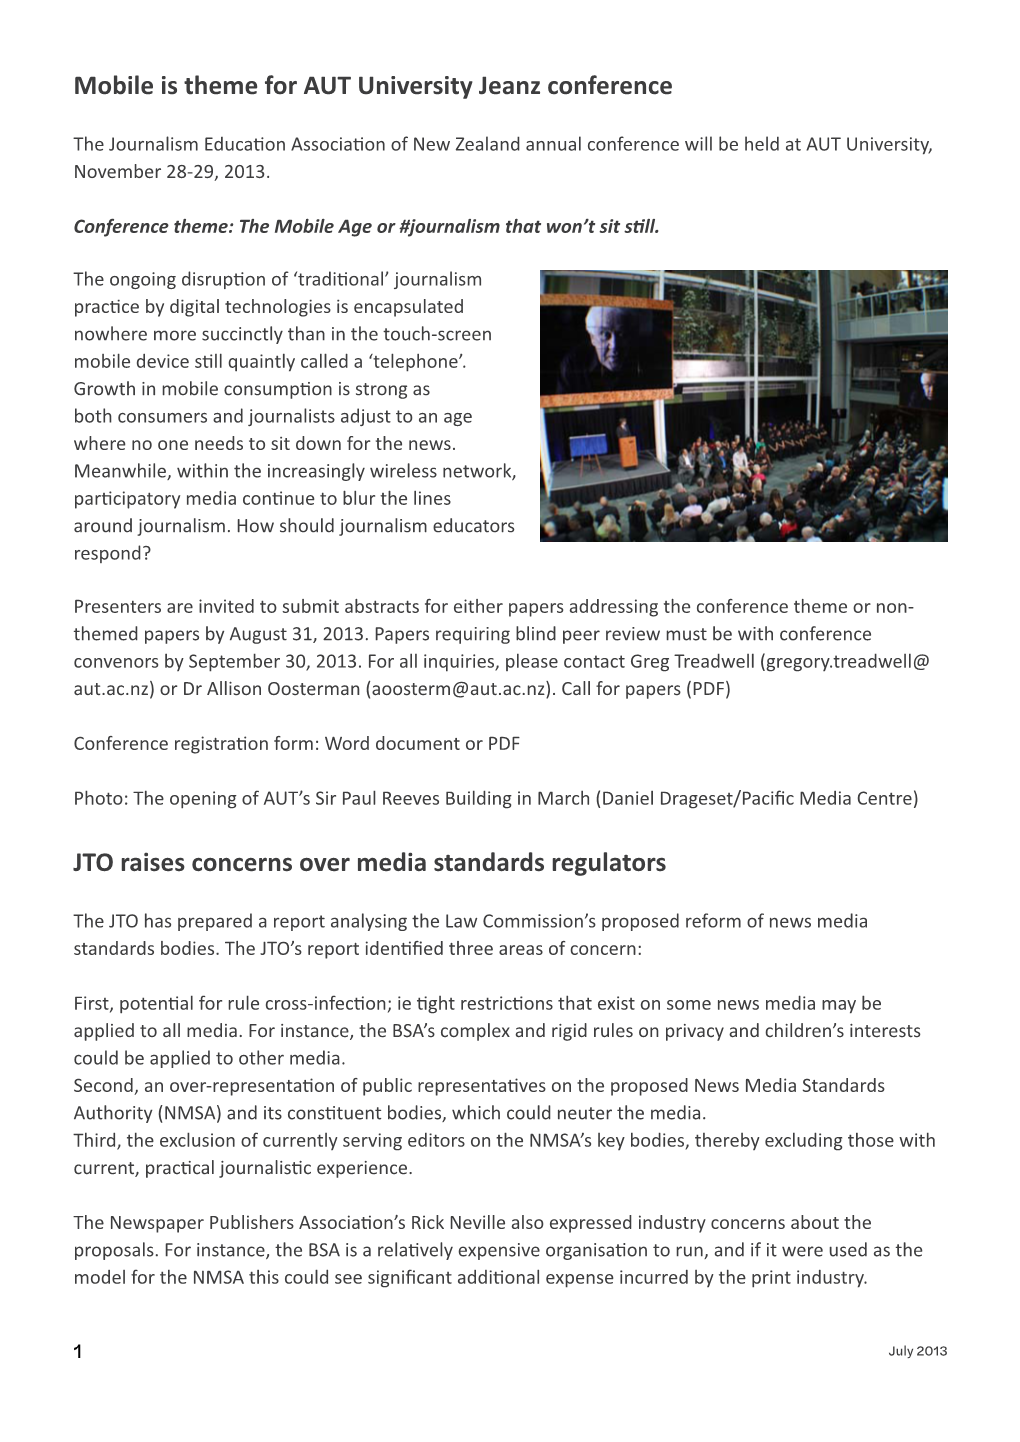 Mobile Is Theme for AUT University Jeanz Conference JTO Raises